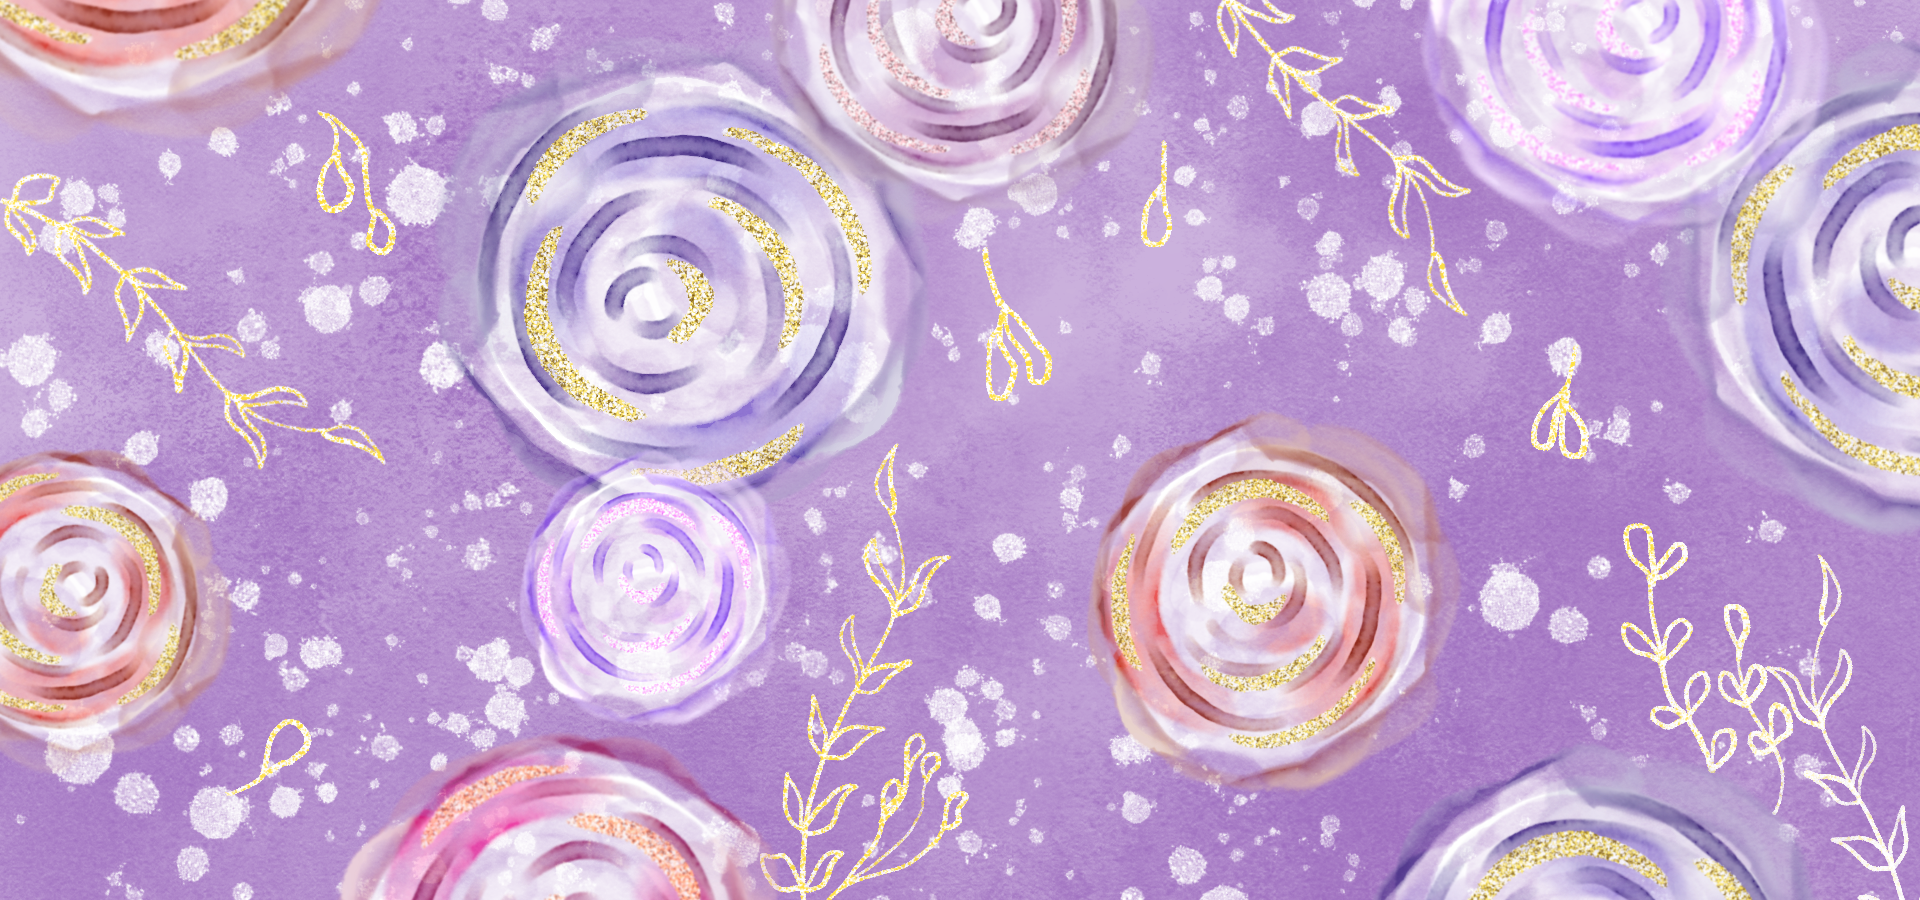 花卉叶子金箔抽象水彩紫色背景图片